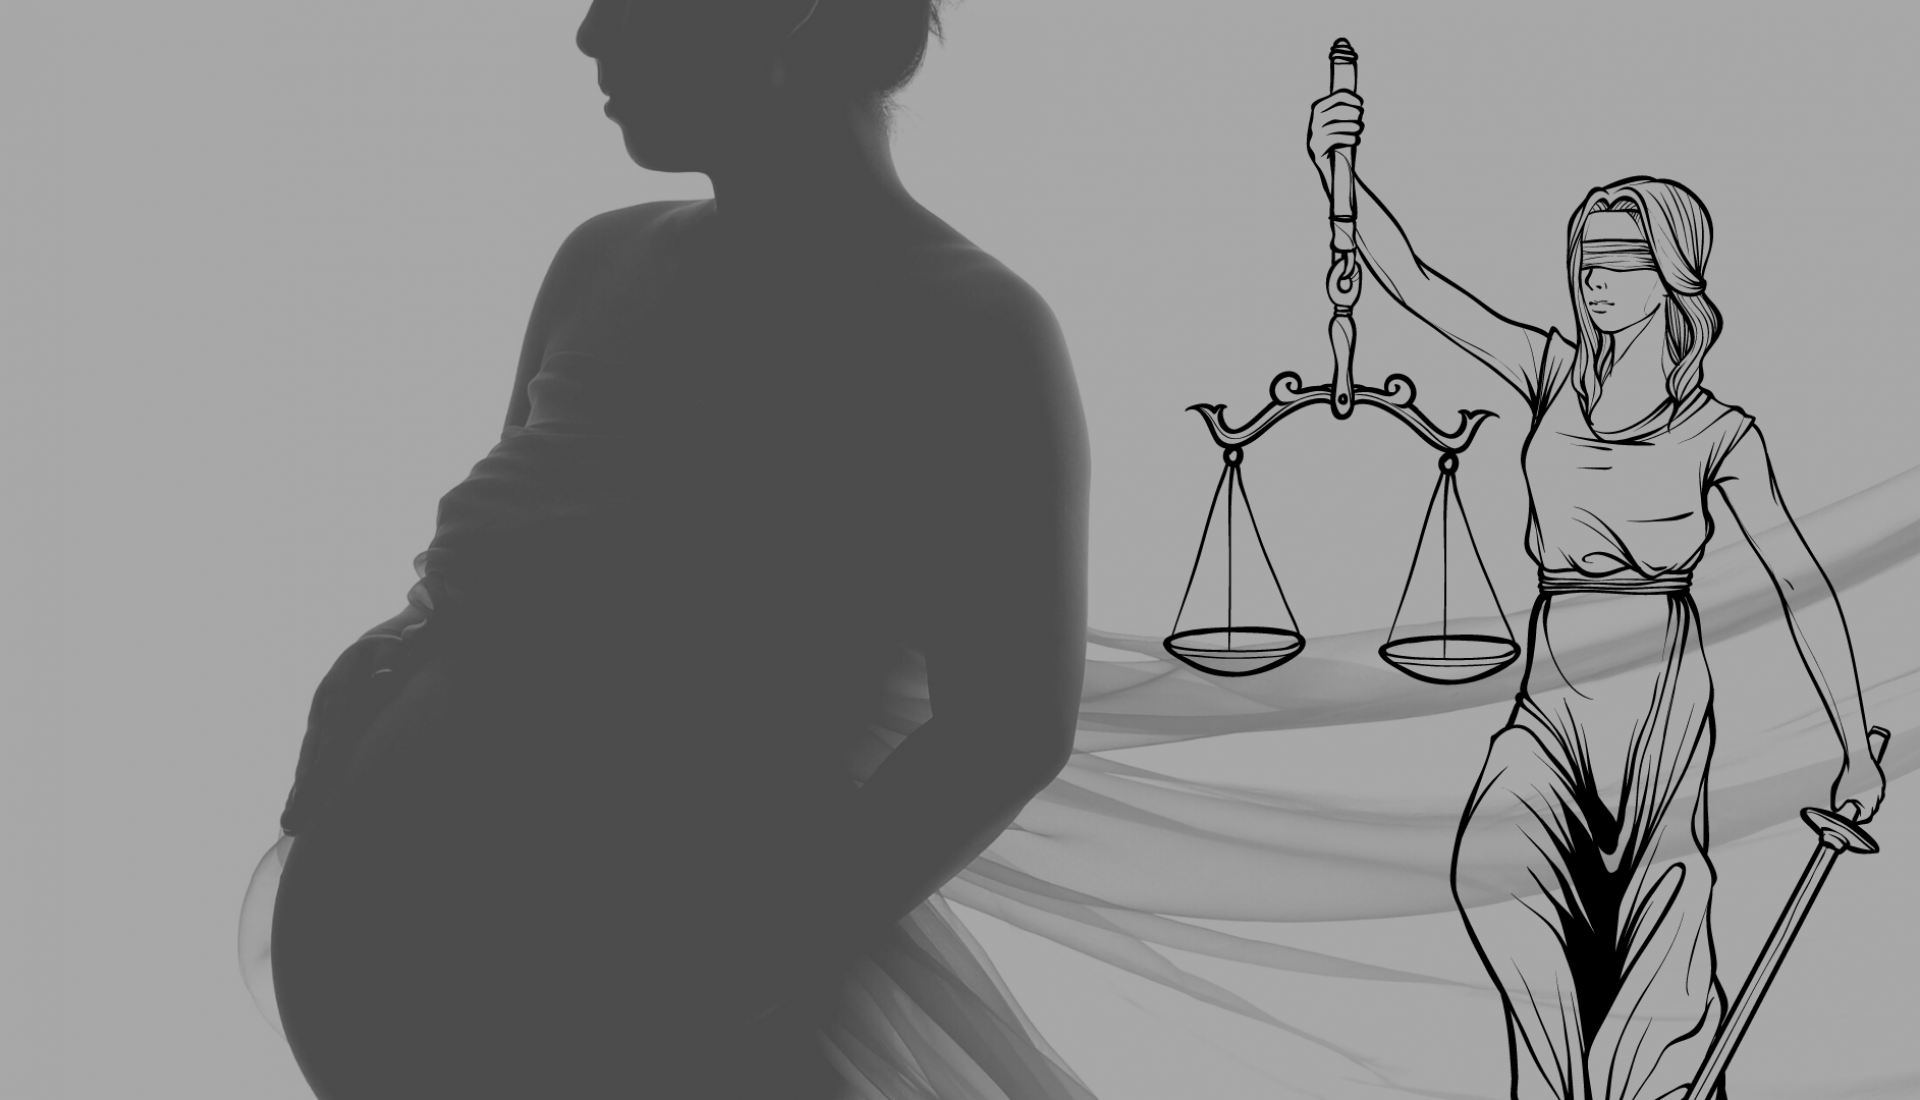 La gestation pour autrui : enjeux juridiques et éthiques